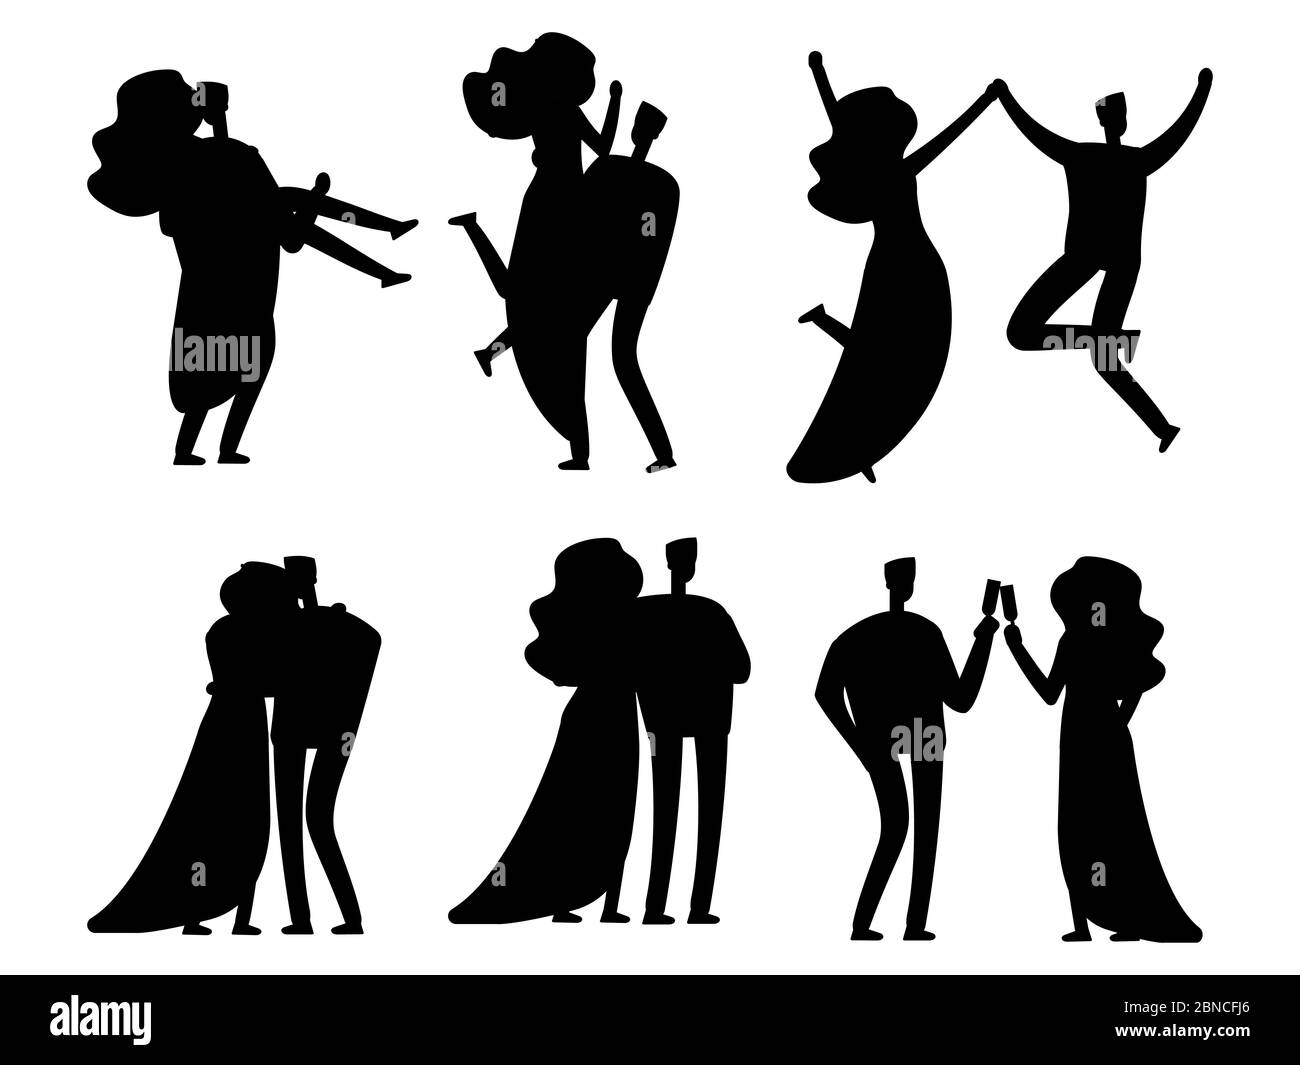 Glücklich verheiratete Paare sihouettes Vektor-Design isoliert. Silhouette Paar schwarz, Hochzeit Ehe weiblich und männlich Illustration Stock Vektor